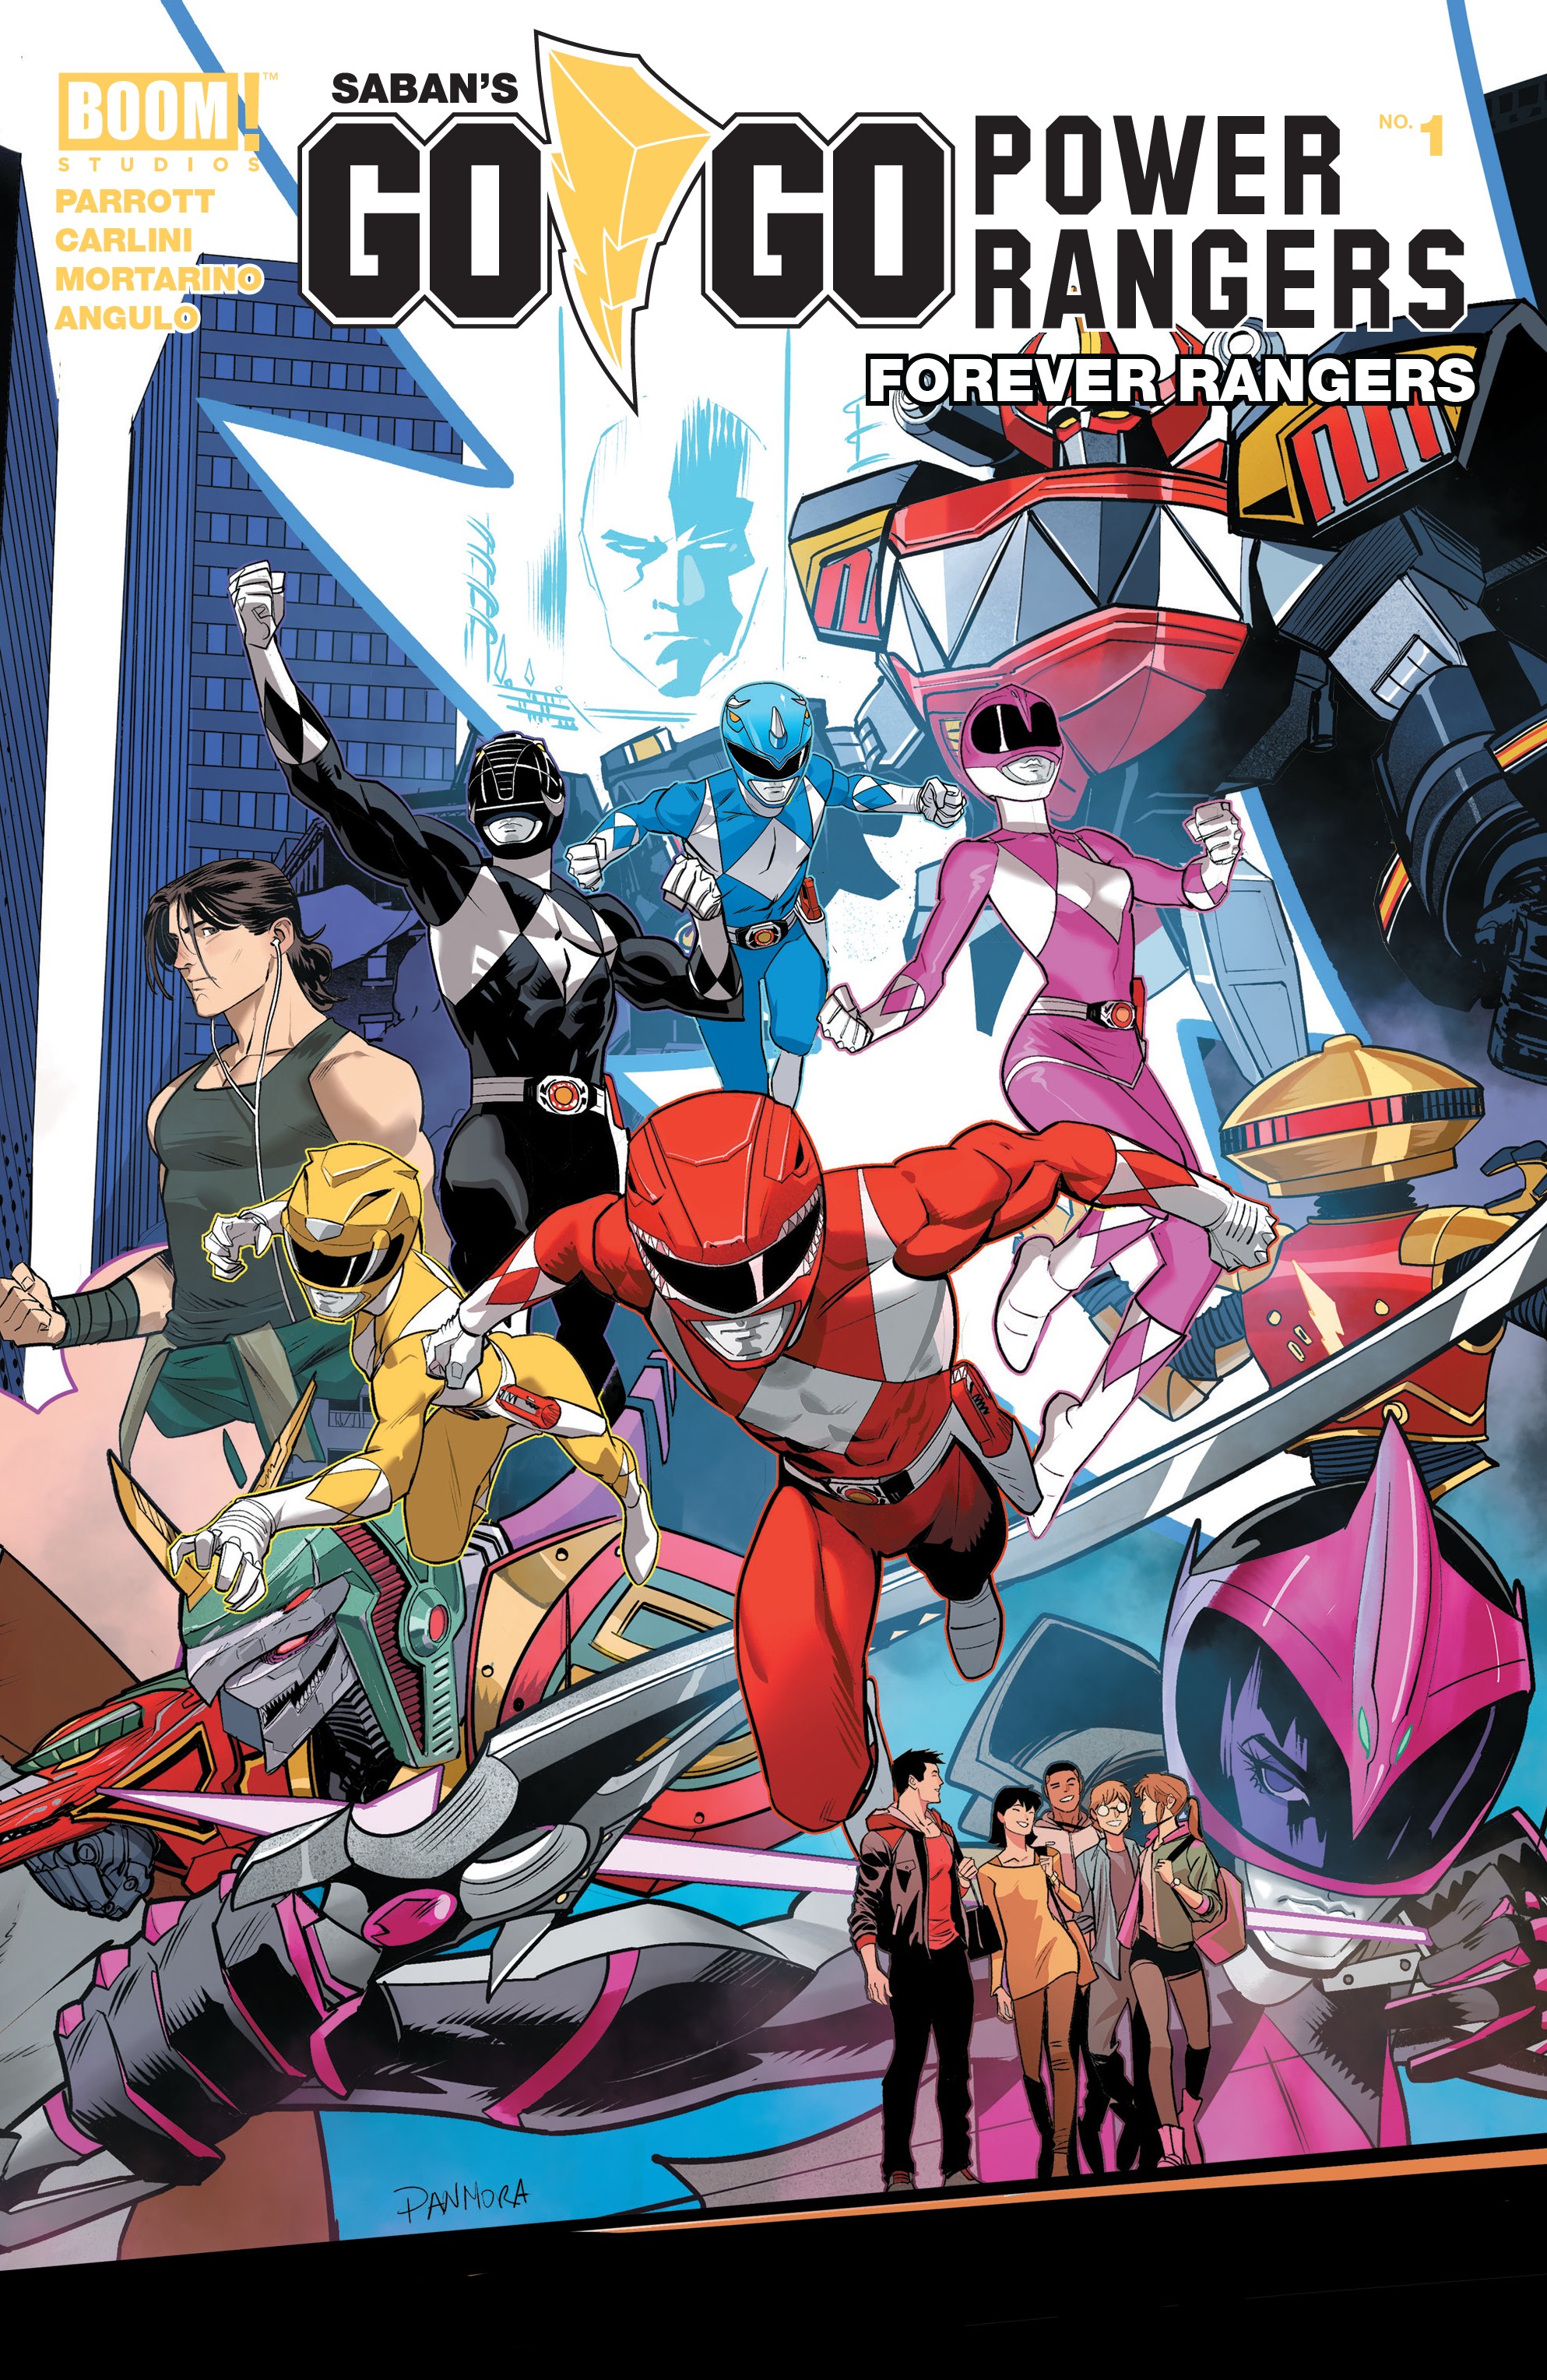 Read online Saban's Go Go Power Rangers: Forever Rangers comic -  Issue # Full - 1